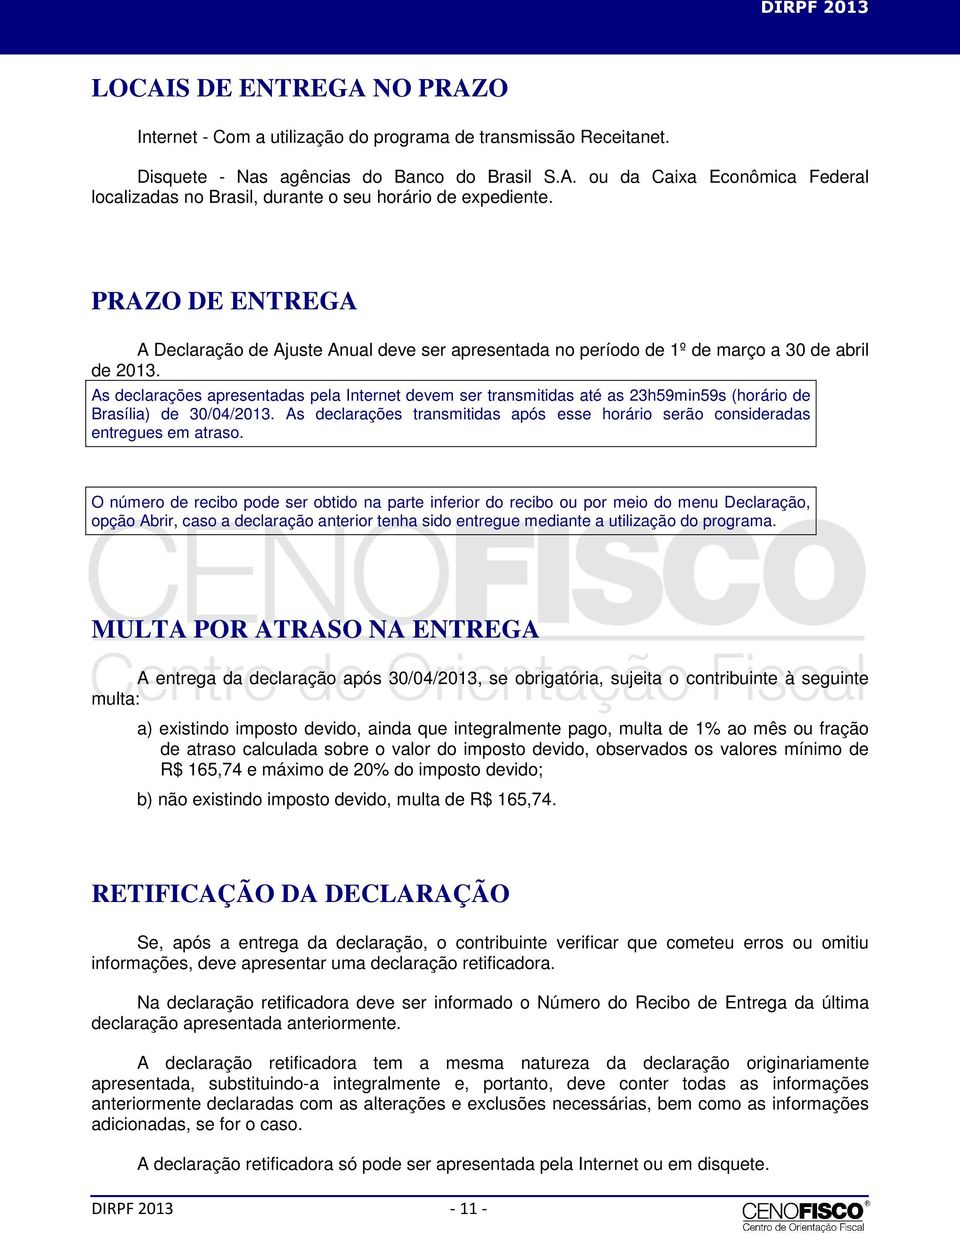 As declarações apresentadas pela Internet devem ser transmitidas até as 23h59min59s (horário de Brasília) de 30/04/2013.